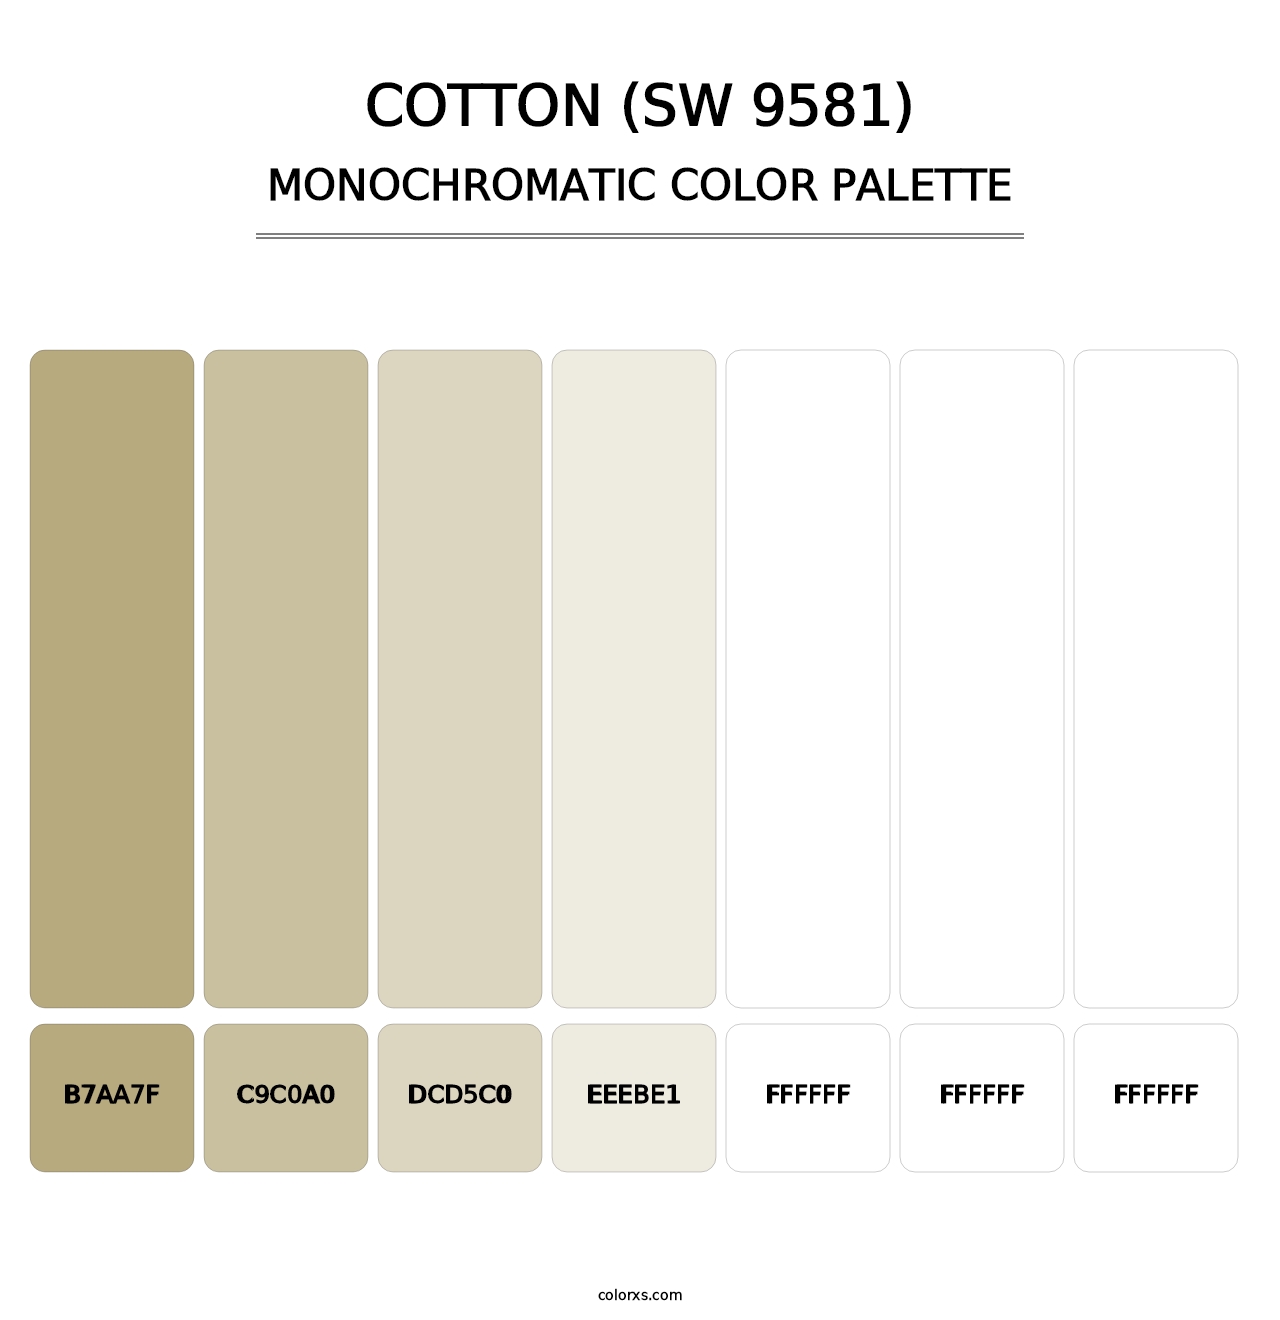 Cotton (SW 9581) - Monochromatic Color Palette